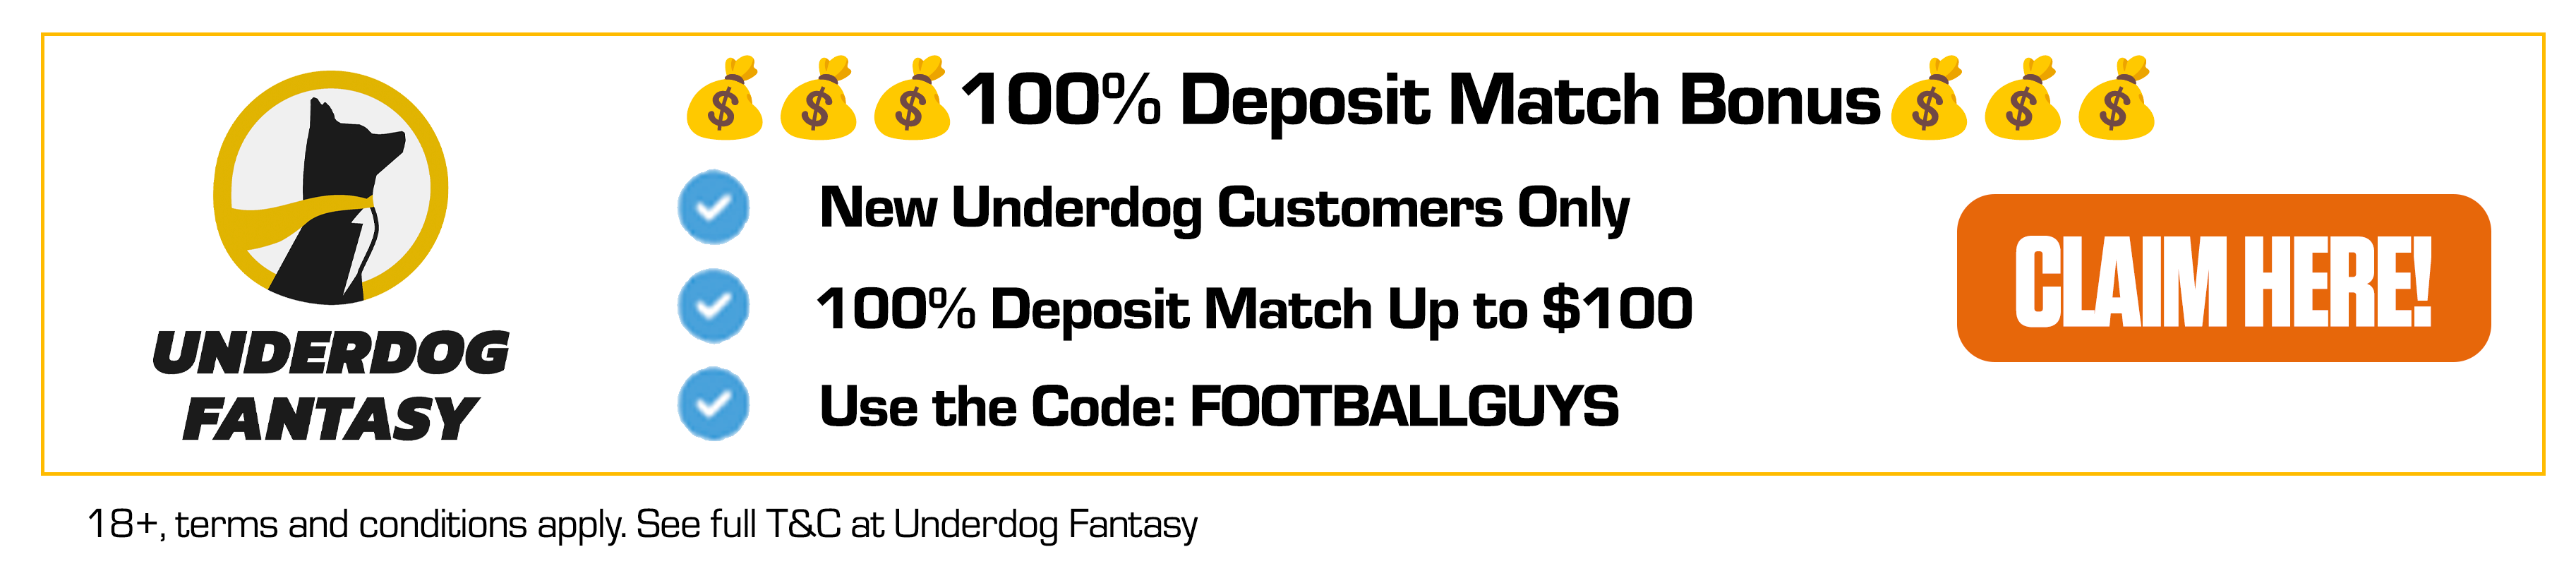 Underdog Fantasy Deposit Match